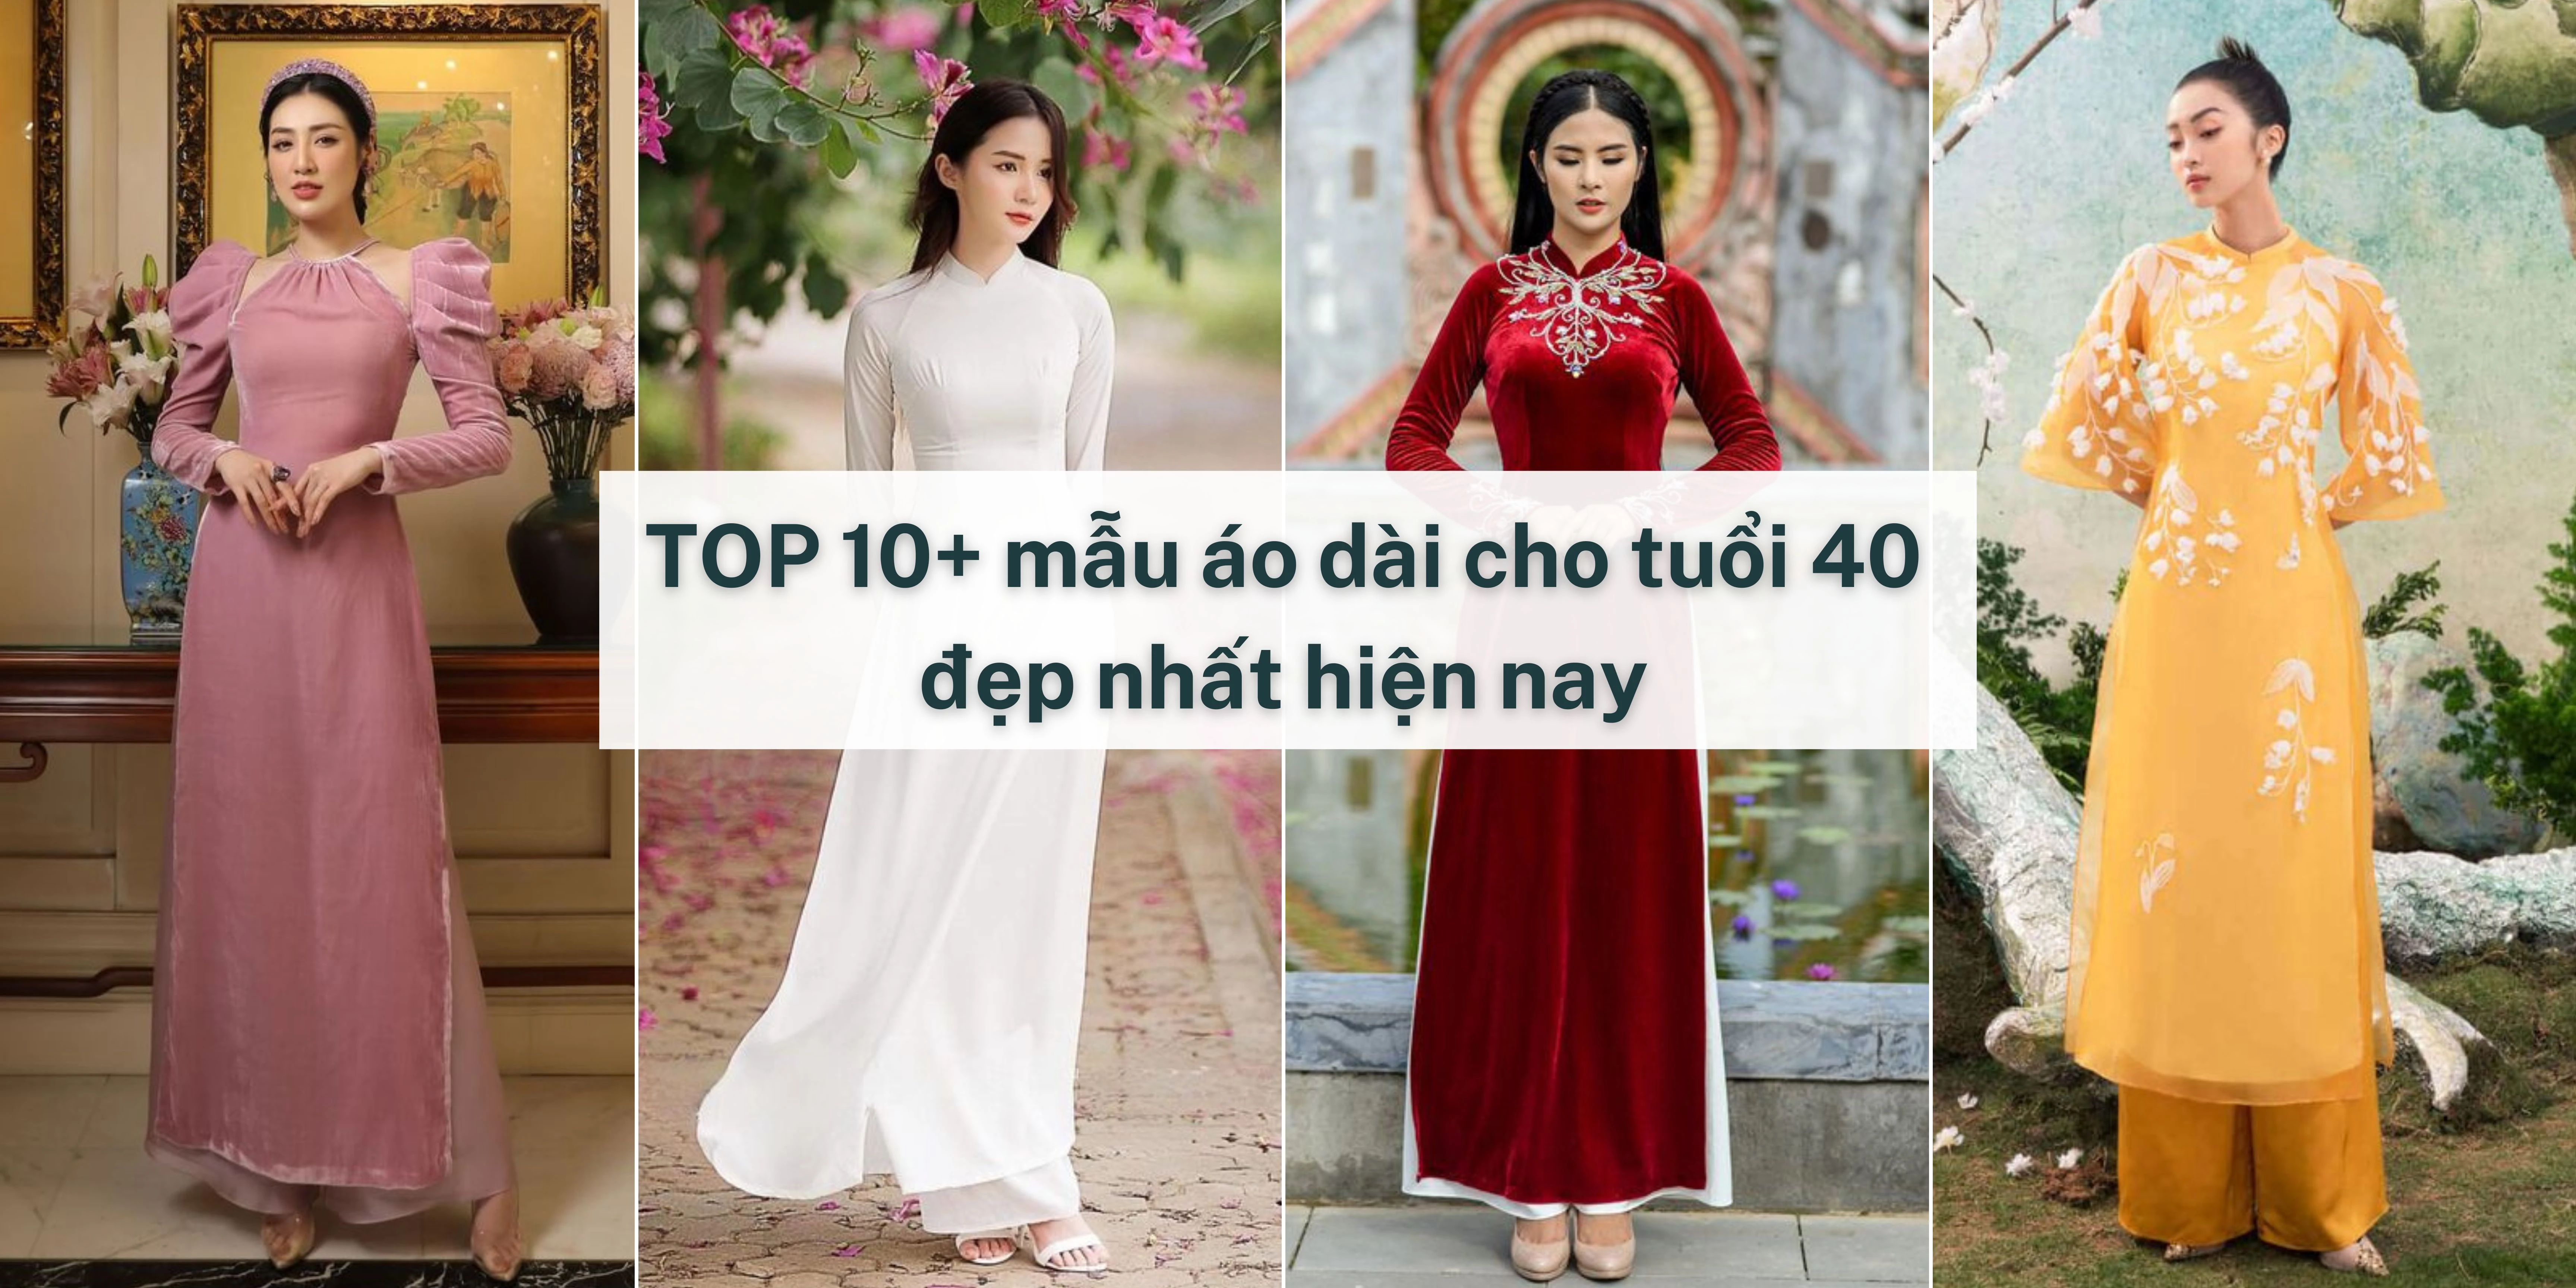 TOP 10+ mẫu áo dài cho tuổi 40 đẹp nhất hiện nay